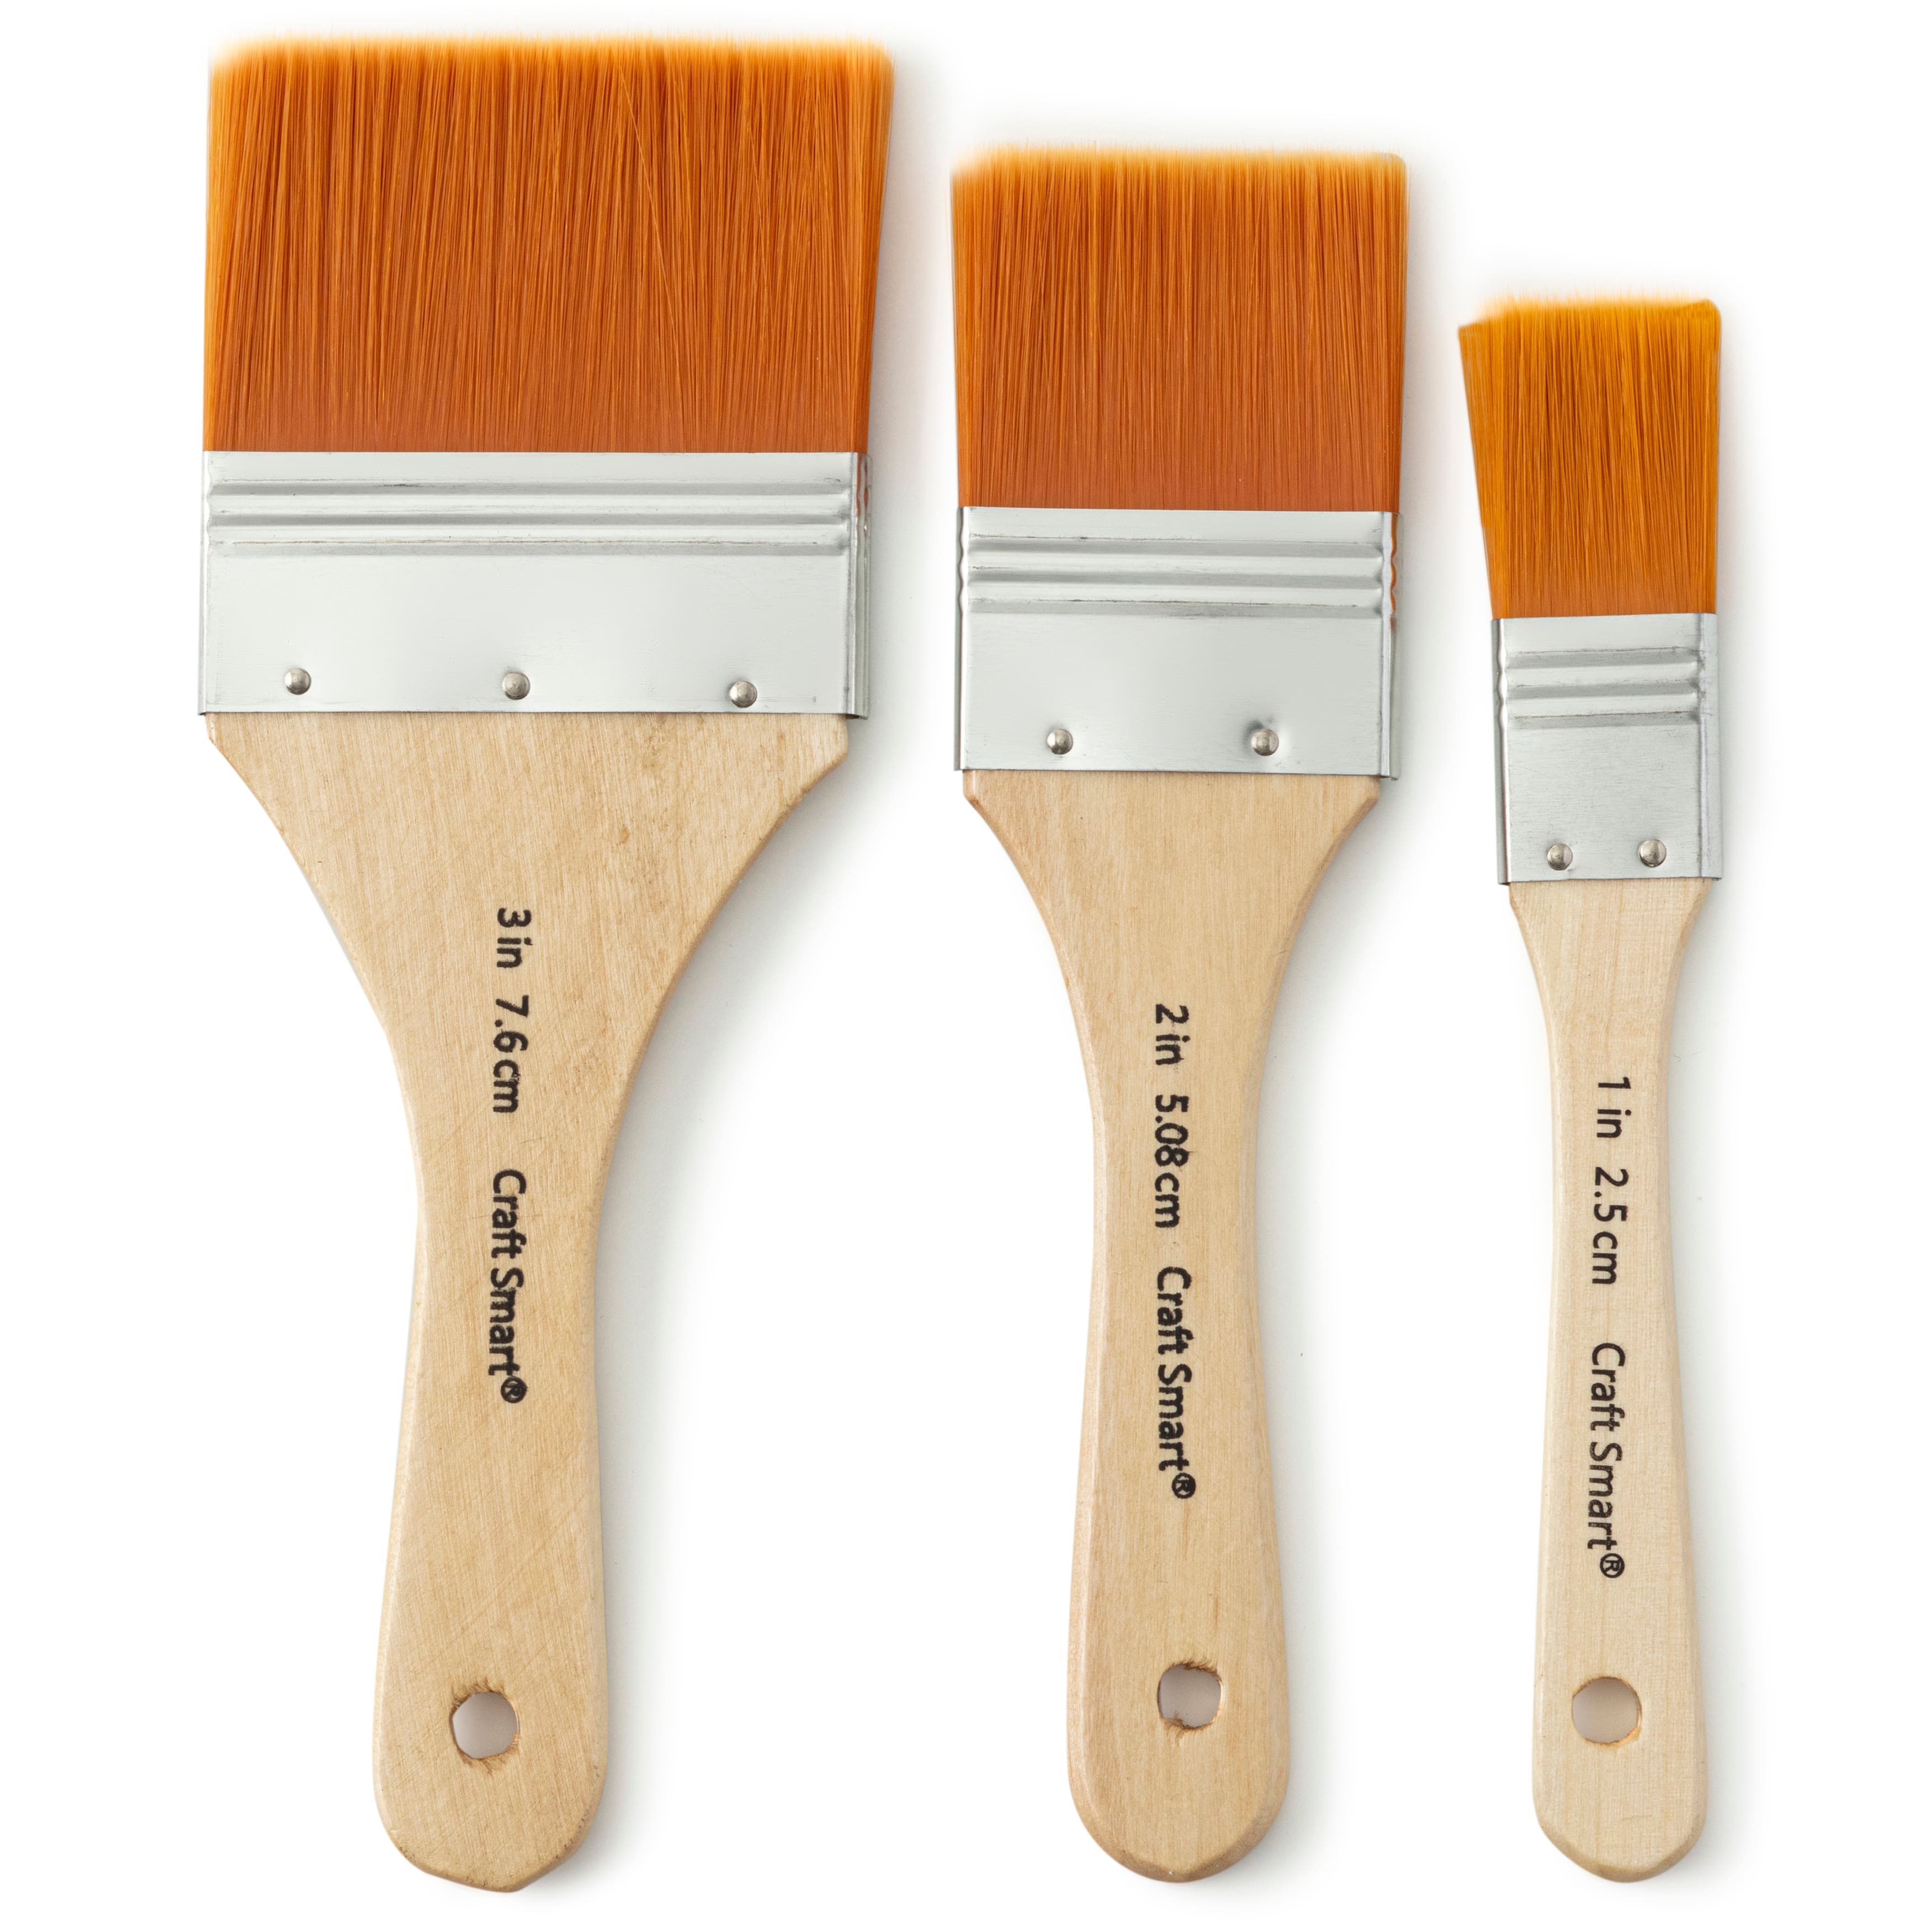 Brown Taklon Variety 15 Piece Brush Set by Craft Smart®